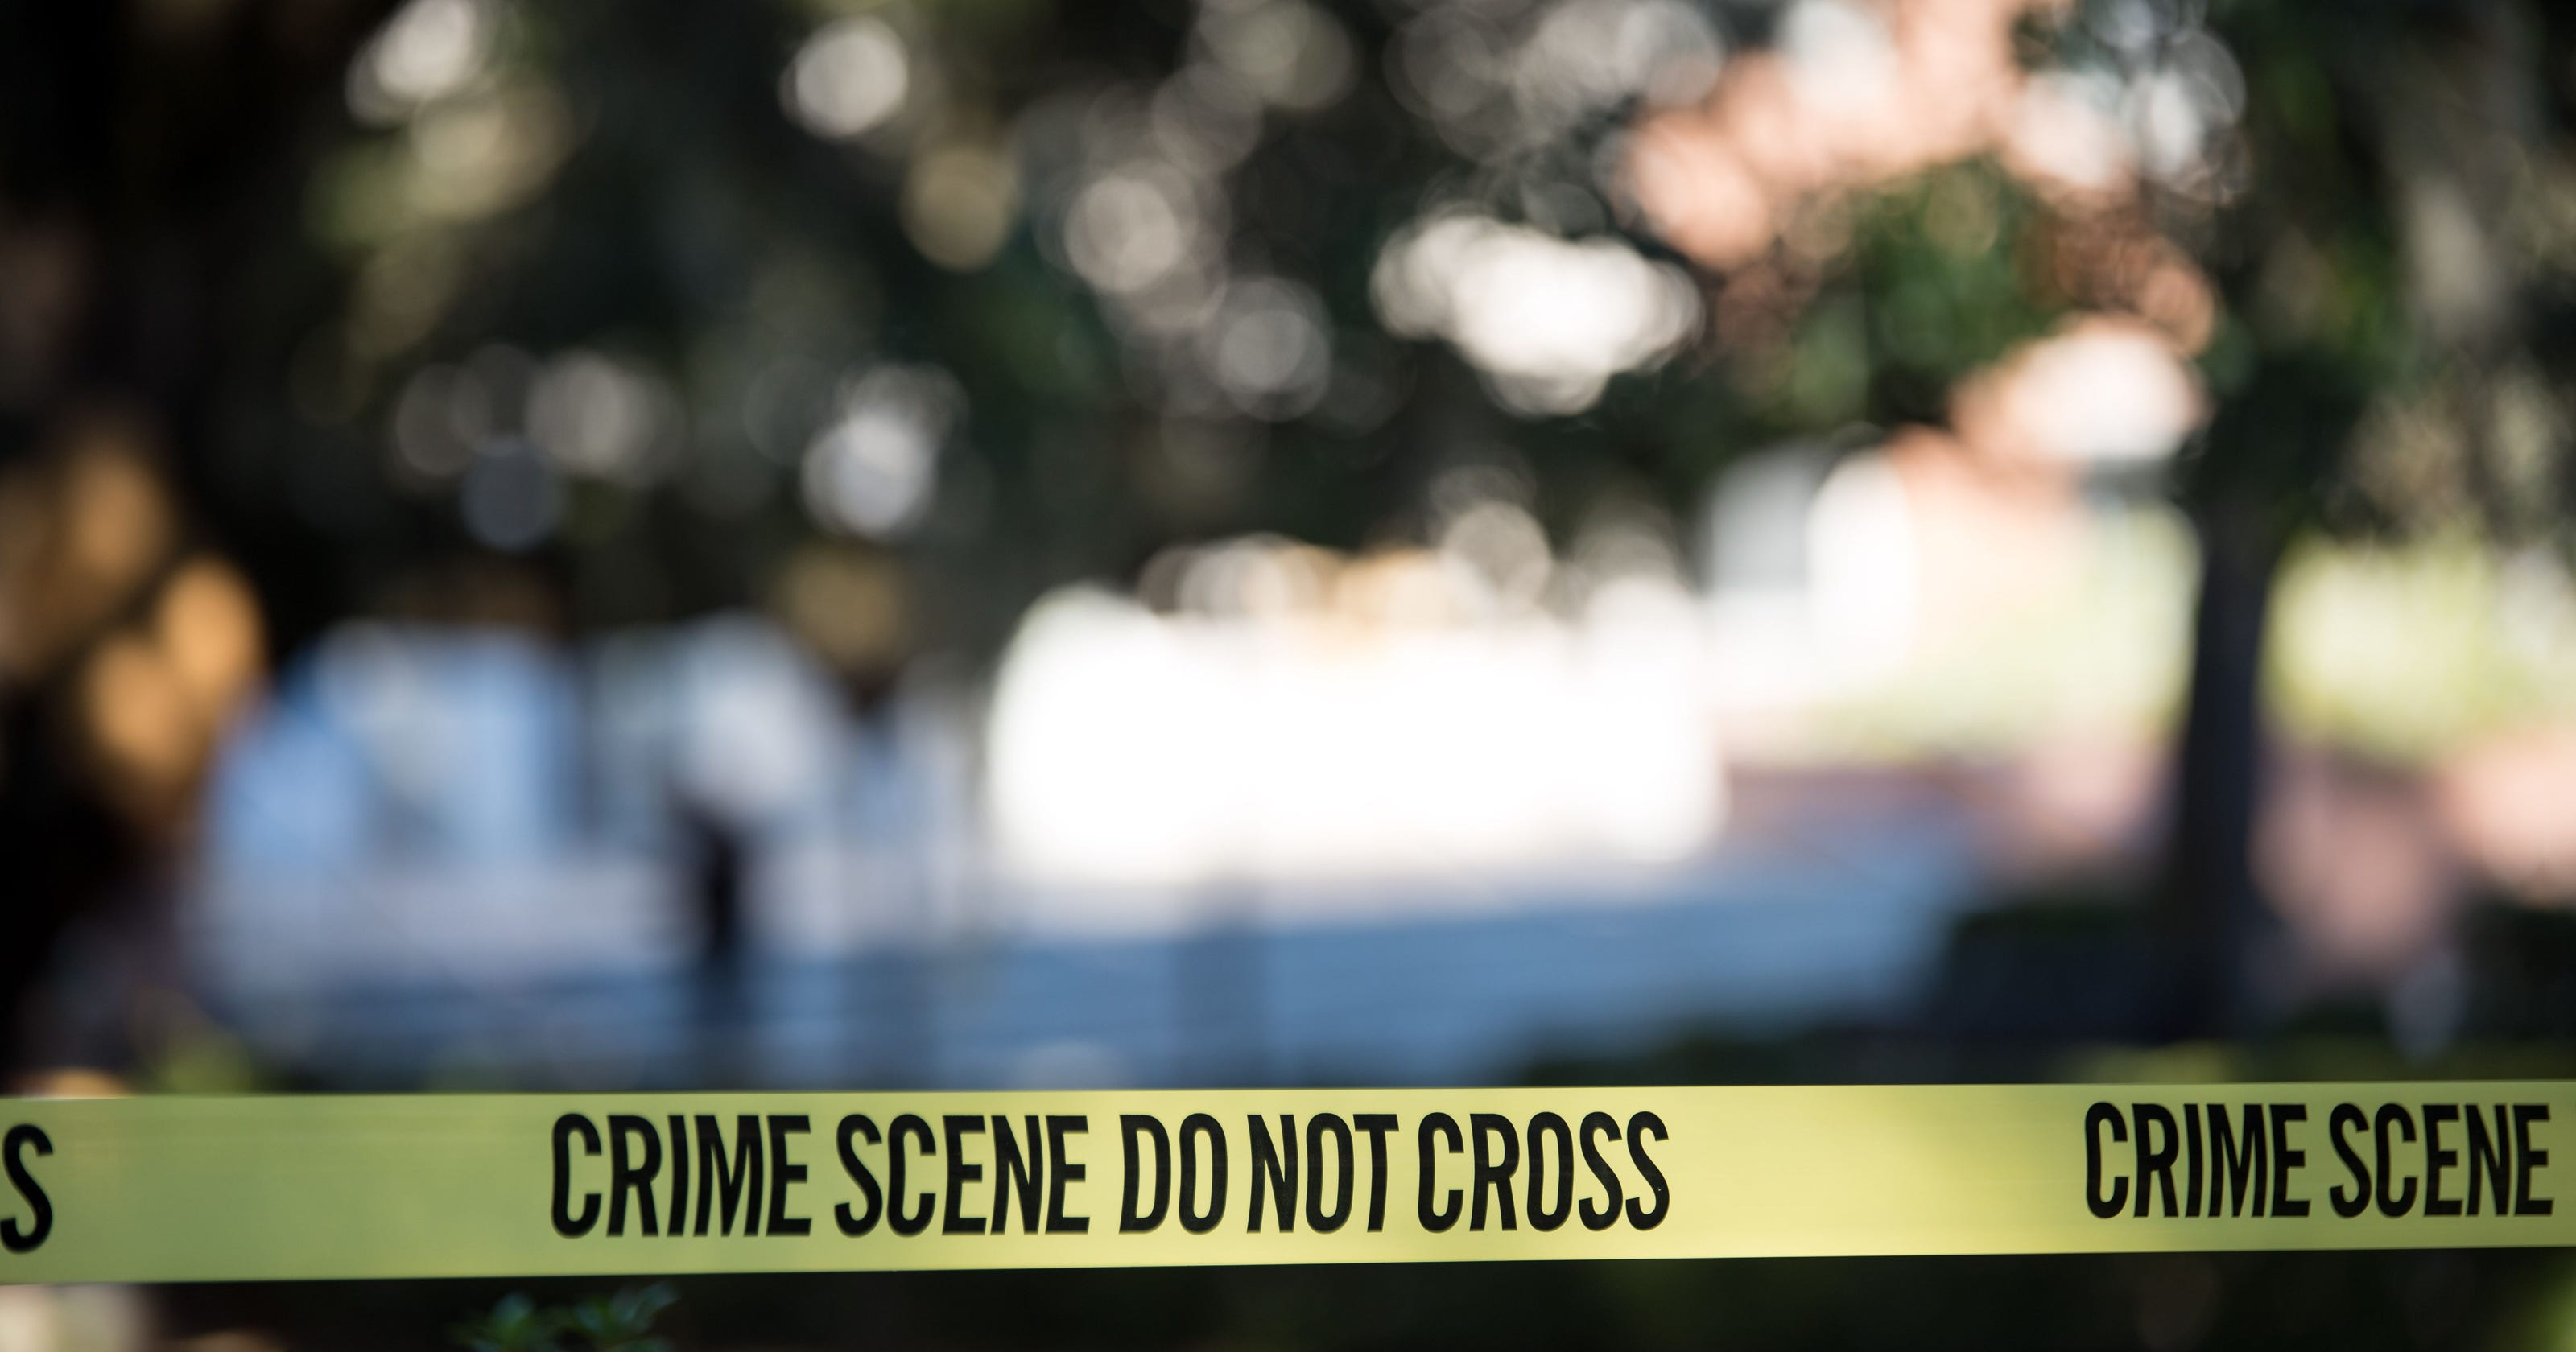 2 people killed inside Birmingham home identified